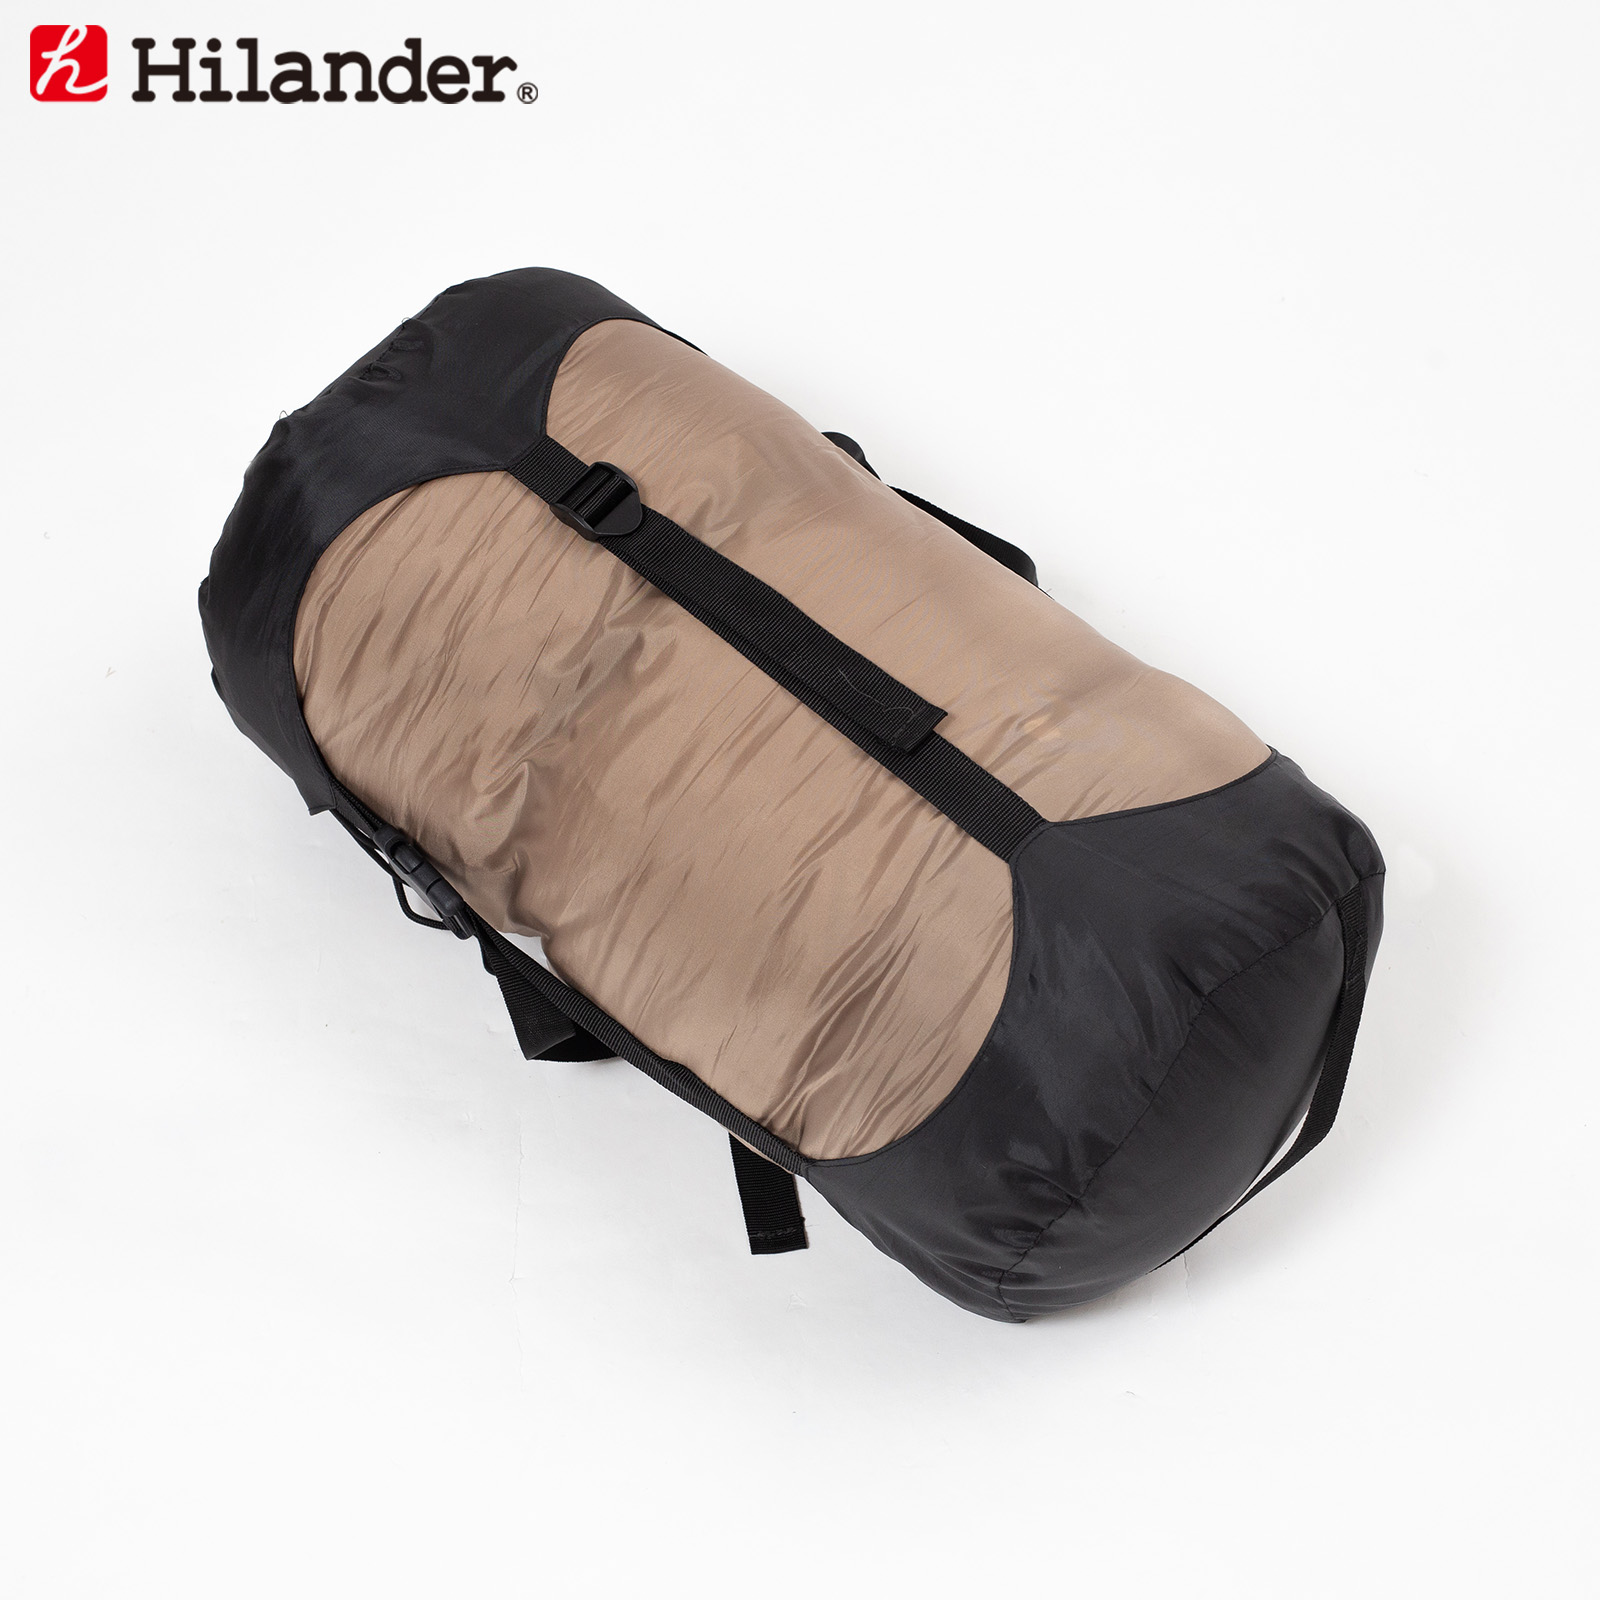  Highlander compression bag 